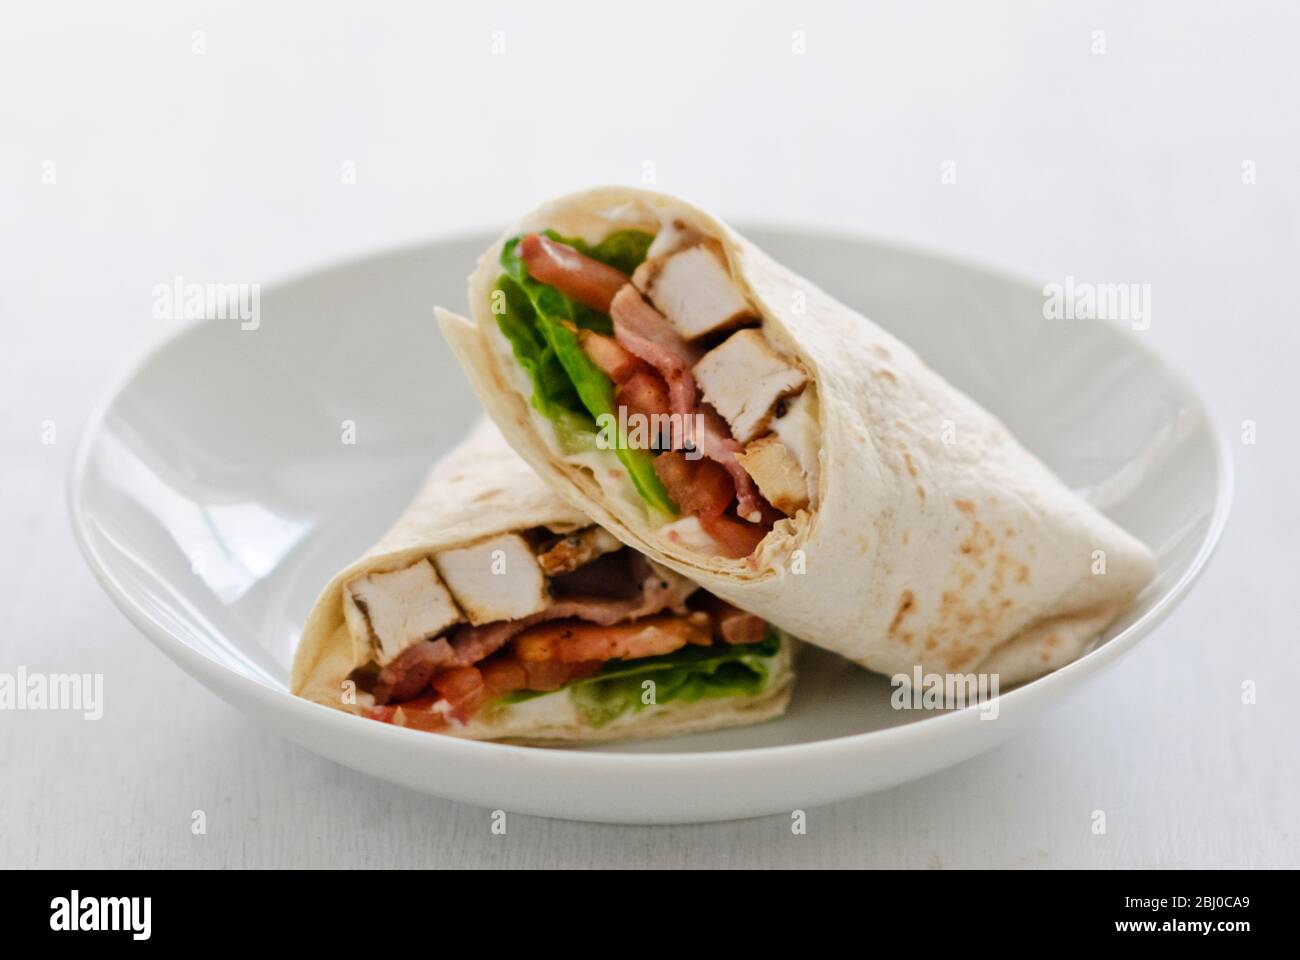 Sandwich avec poulet, bacon, tomate et laitue - Banque D'Images